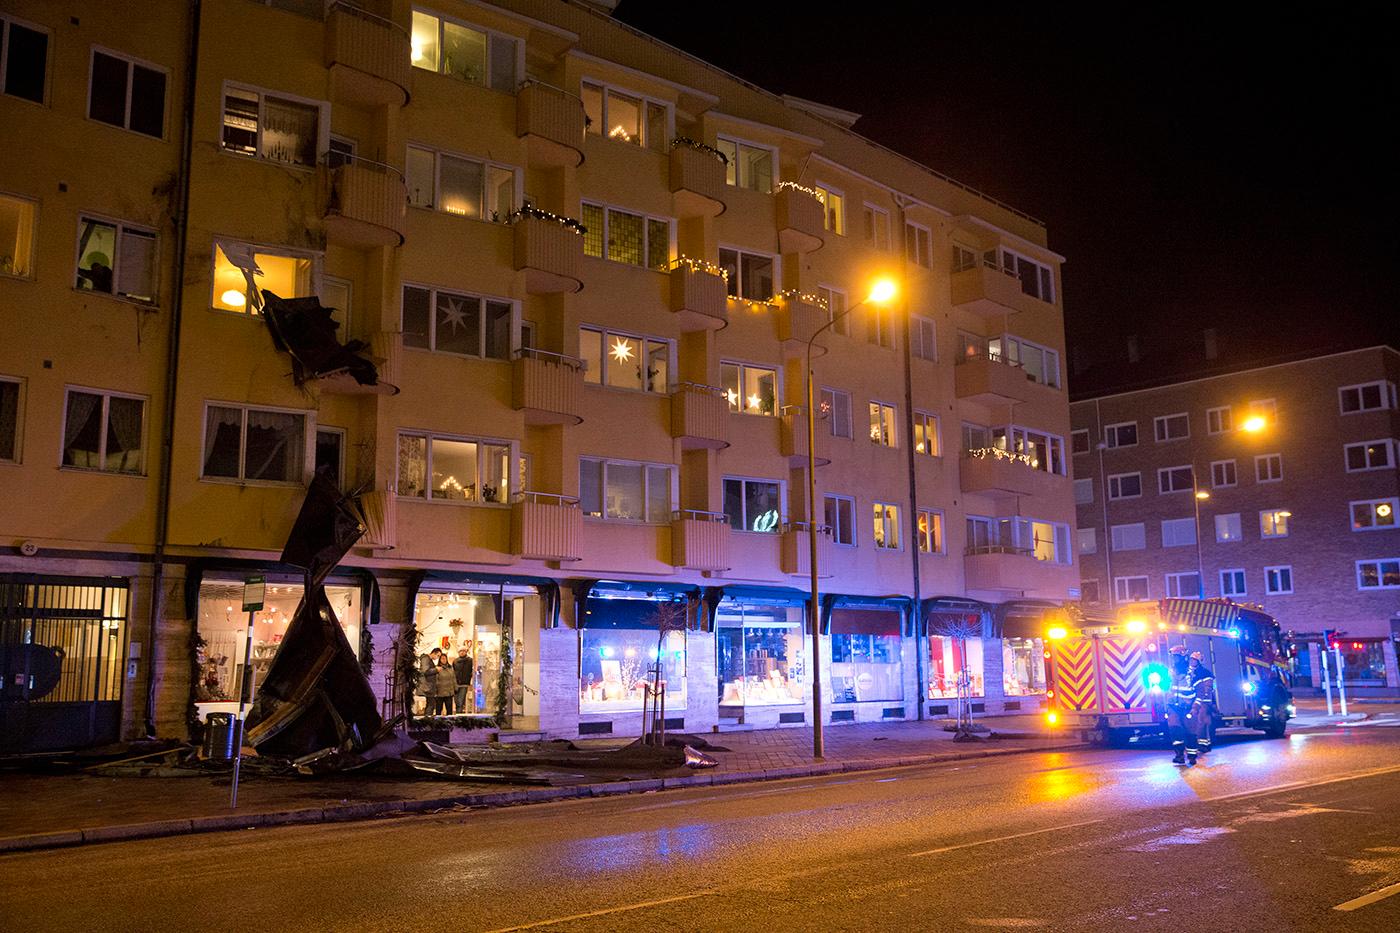 MALMÖ Fastighet på Fridhemstorget i Malmö har tappat takpapp och hängrännor som flugit ner på intilliggande hus.